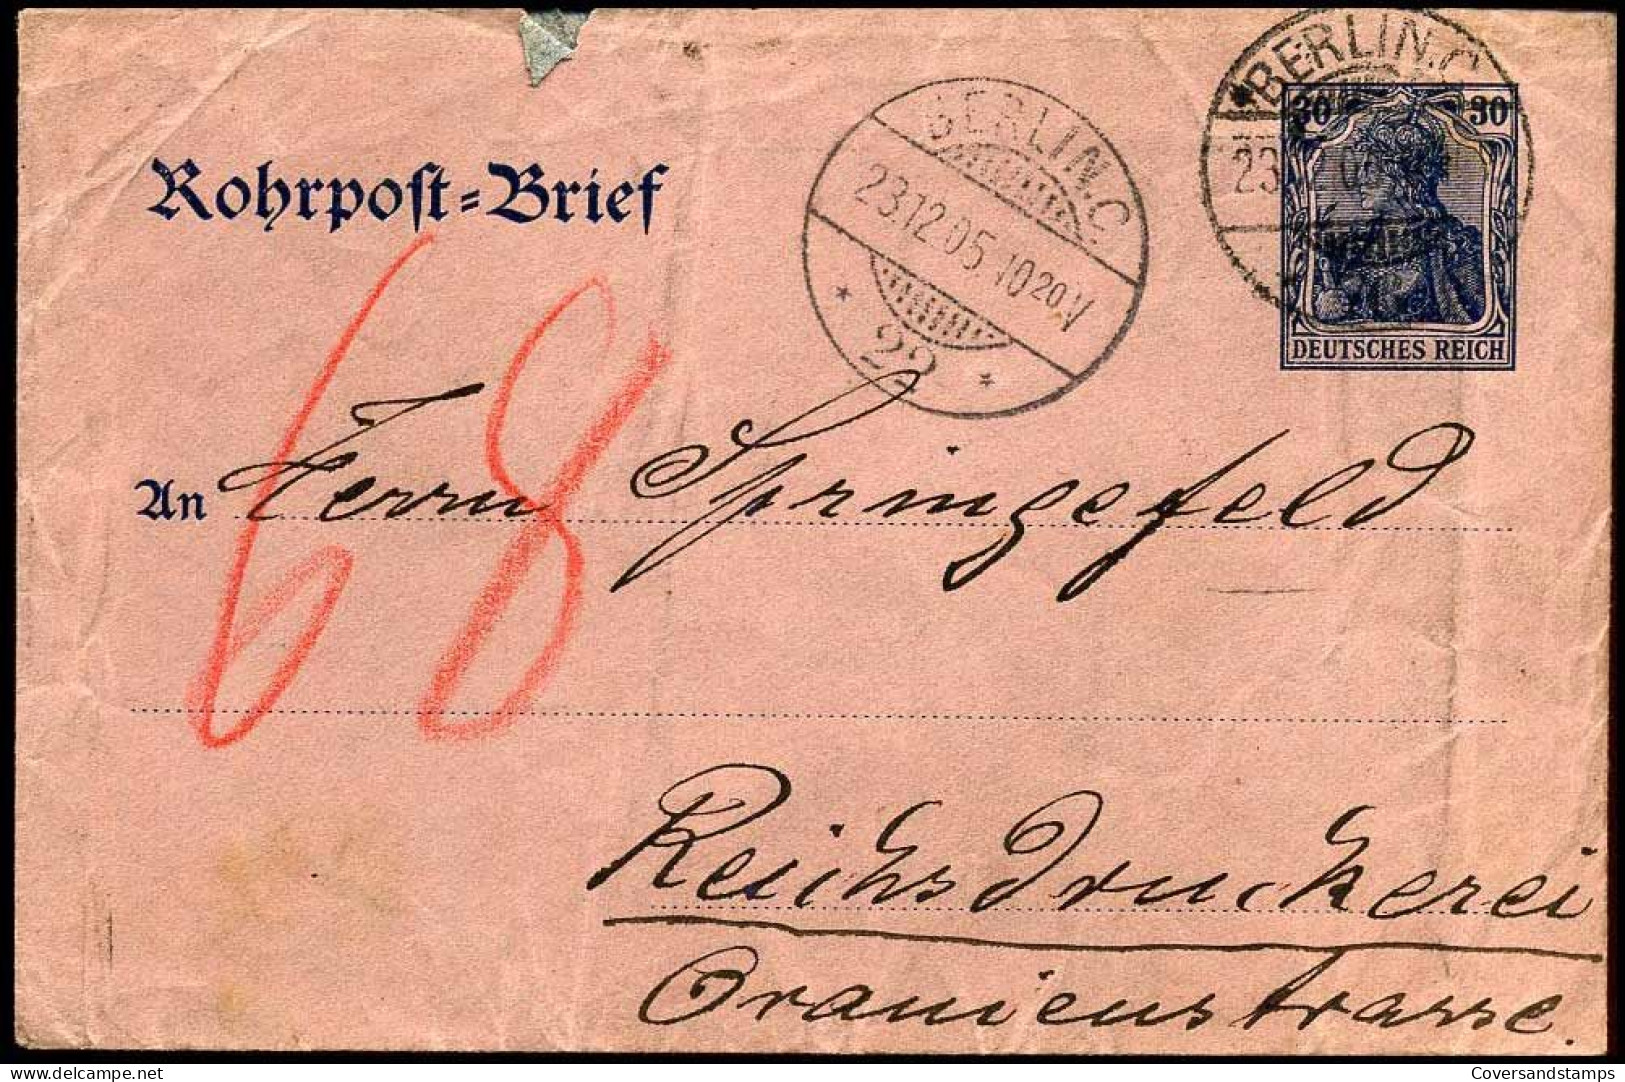 Rohrpost Brief - Berlin - Reichsdruckerei - Enveloppes